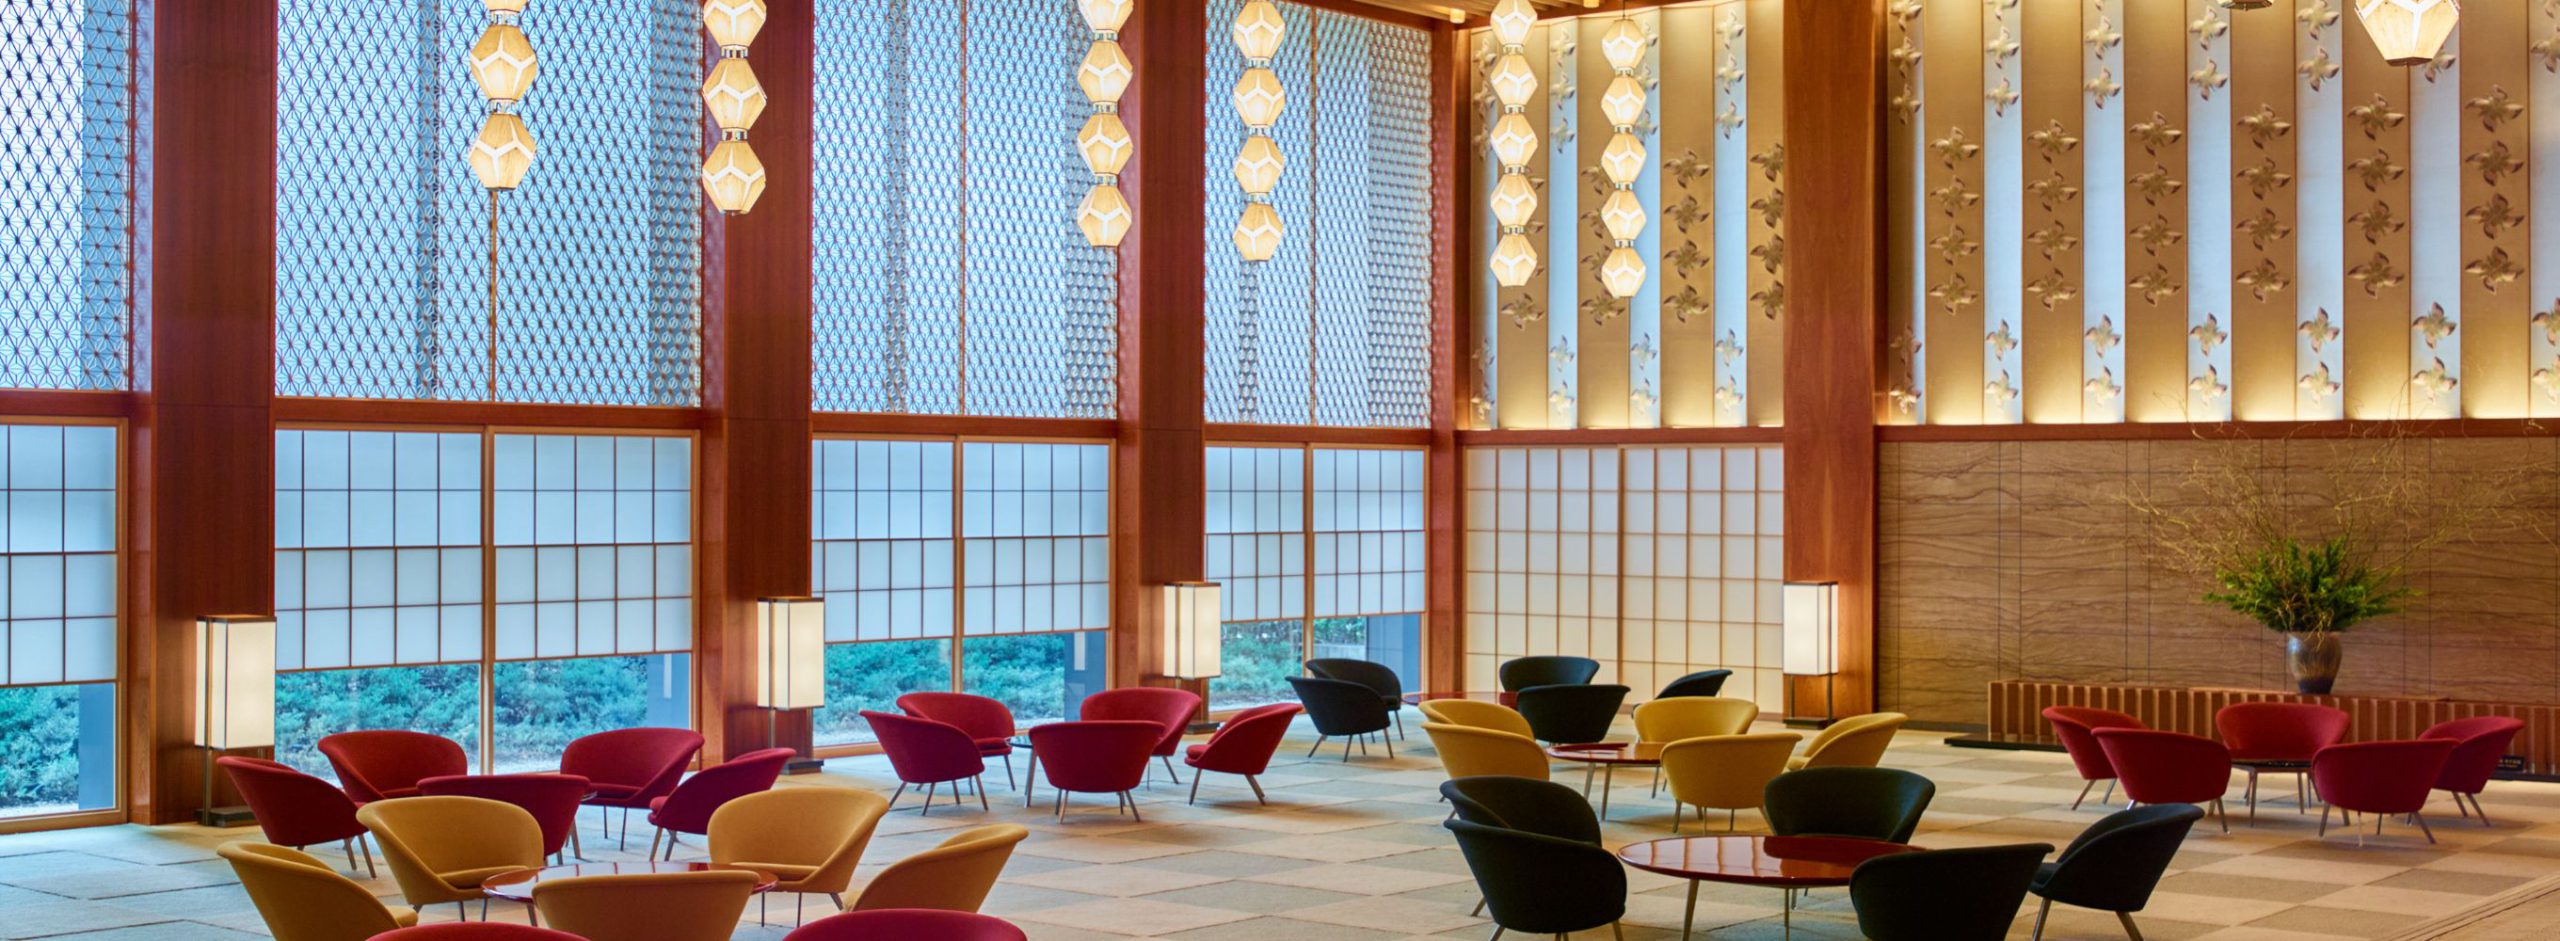 ホテルオークラ東京」で愛された伝説のロビー空間を以前と変わらない 